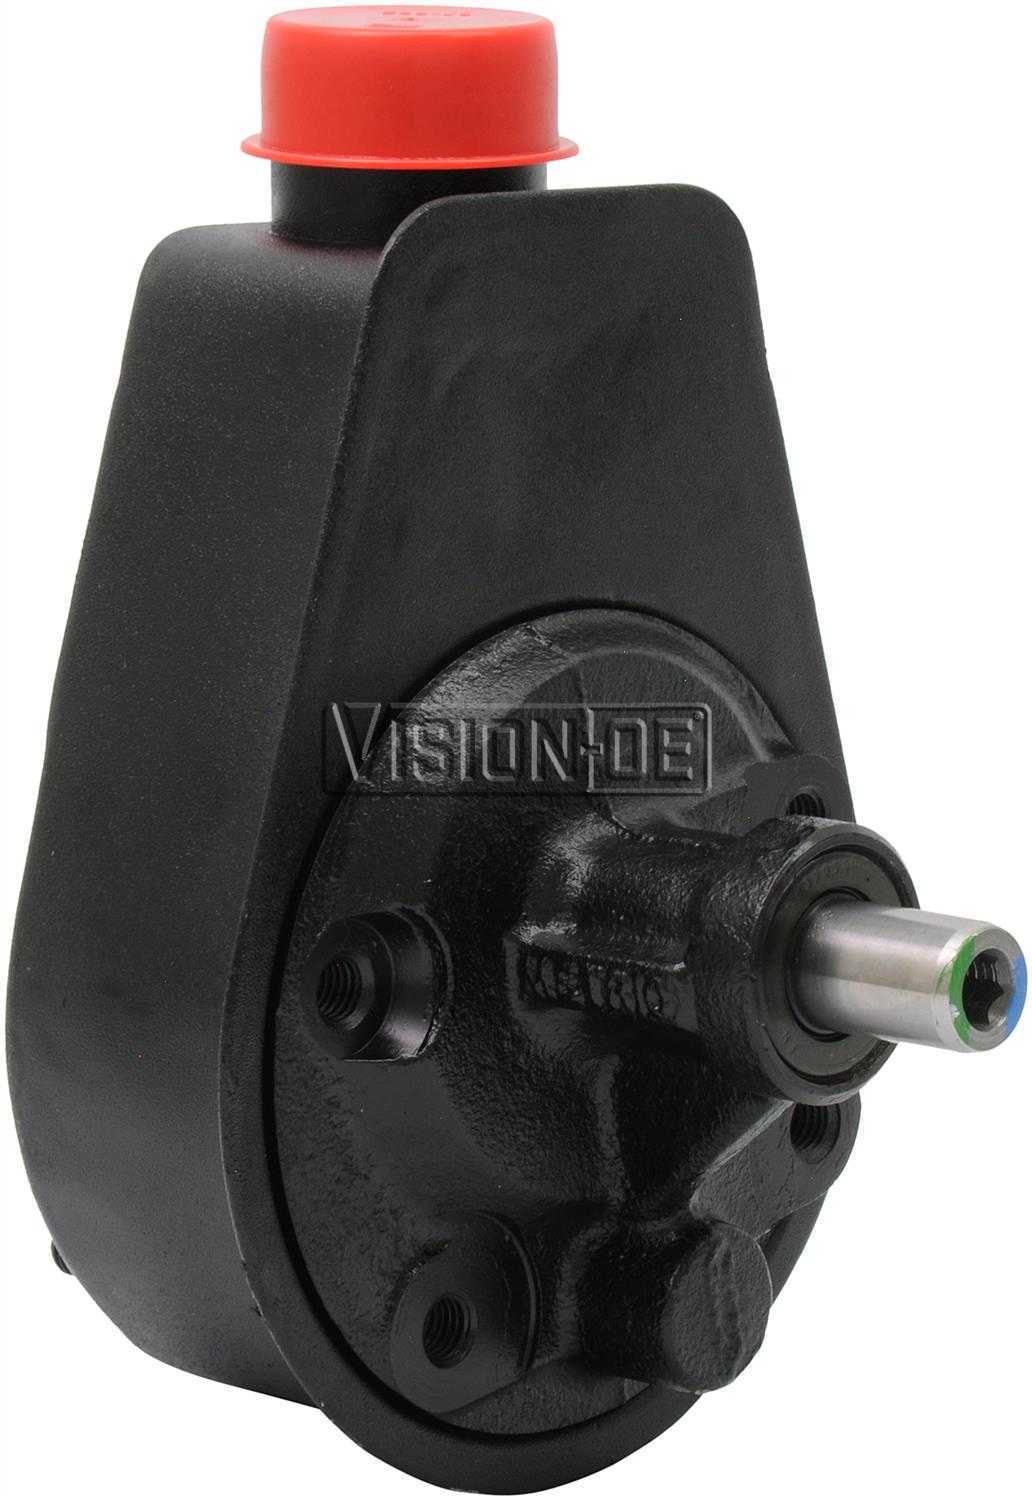 VISION-OE - Reman Power Steering Pump - VOE 731-2147